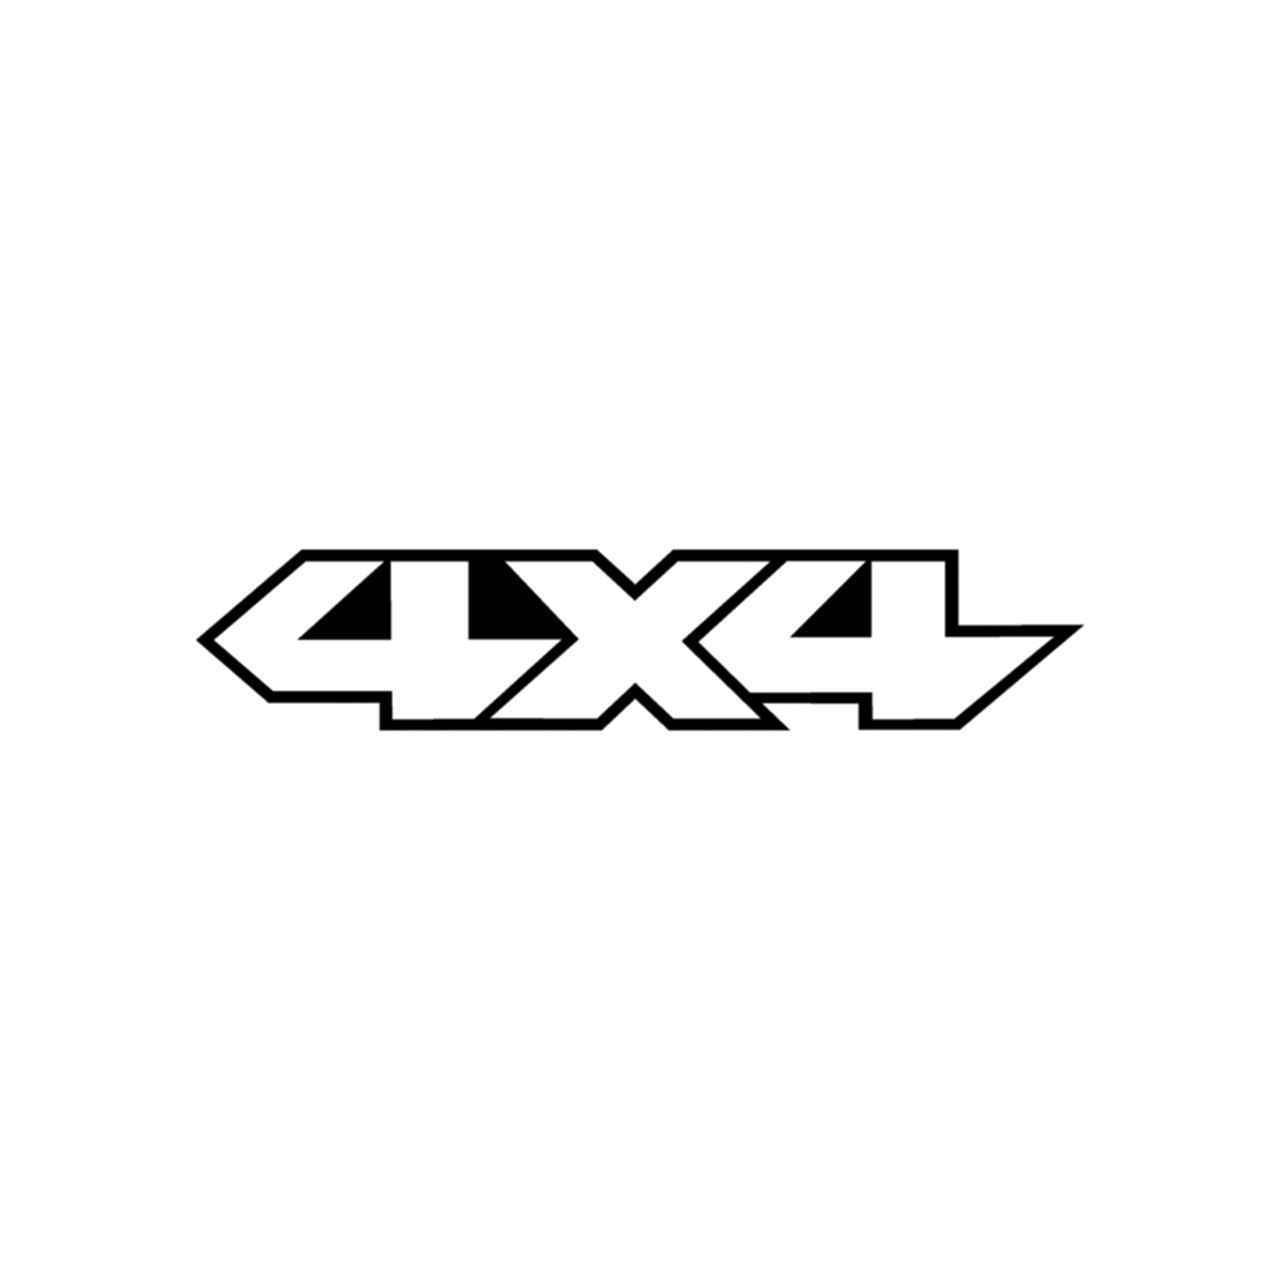 4x4 Logo - Logo Set 21 Vinyl Decal